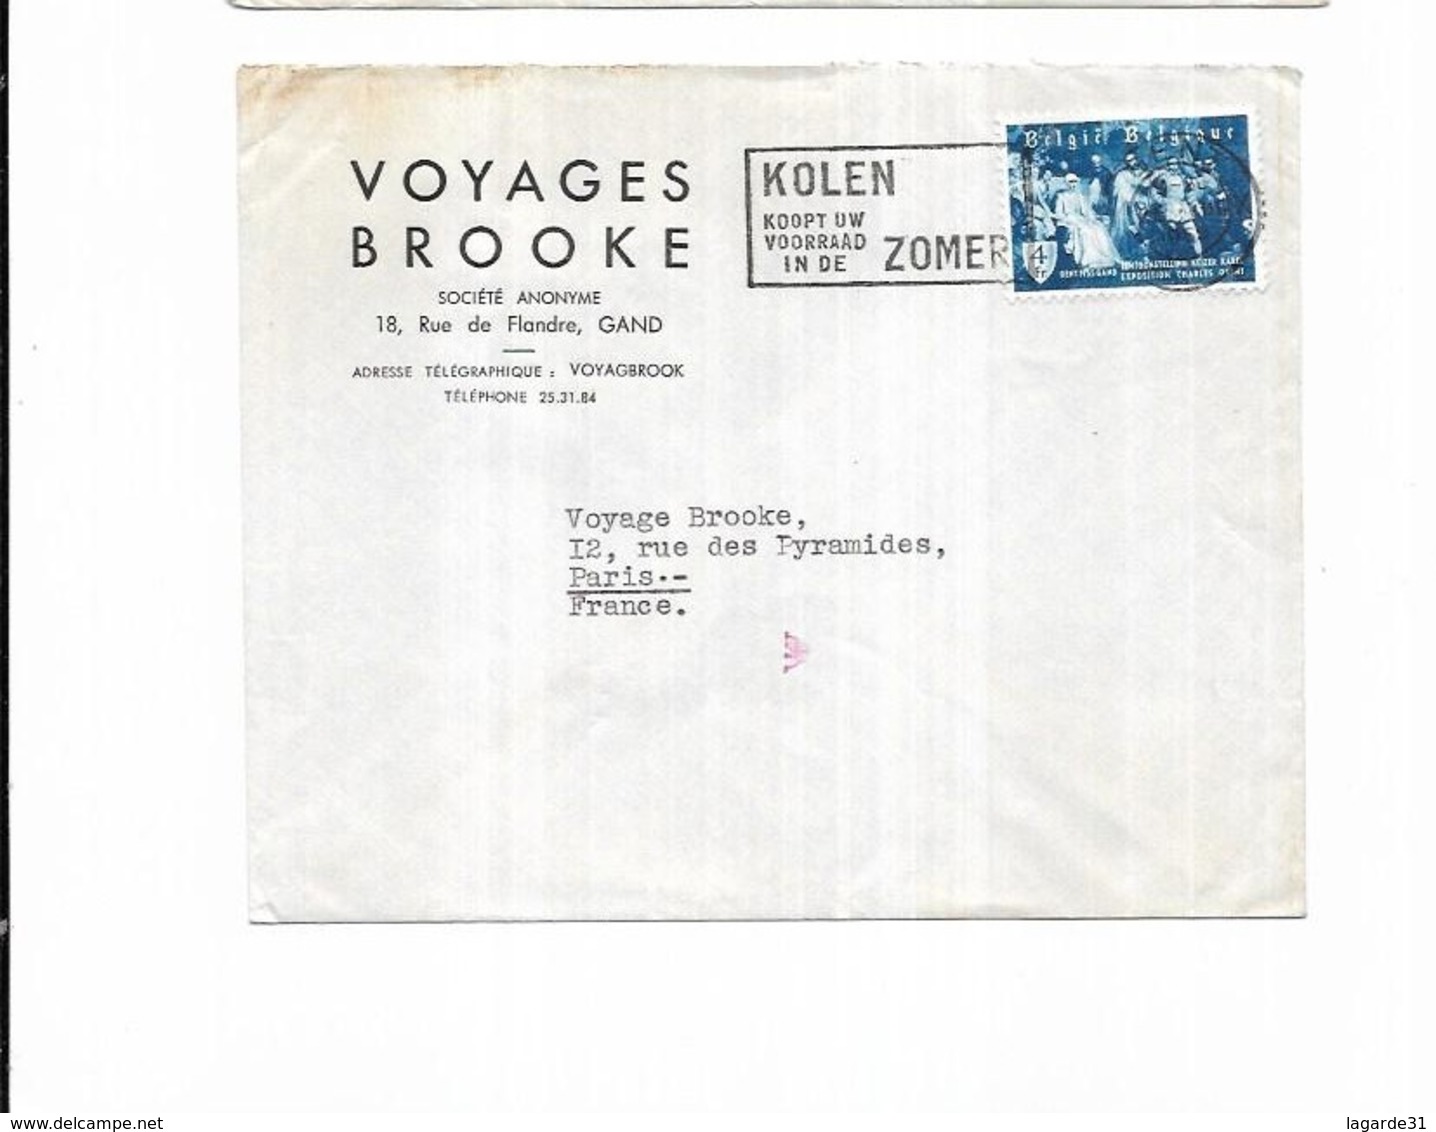 1955 Belgique Voyages Brooke Gand KOLEN KOOPT UW VOORRAAD IN DE ZOMER - Sellados Mecánicos